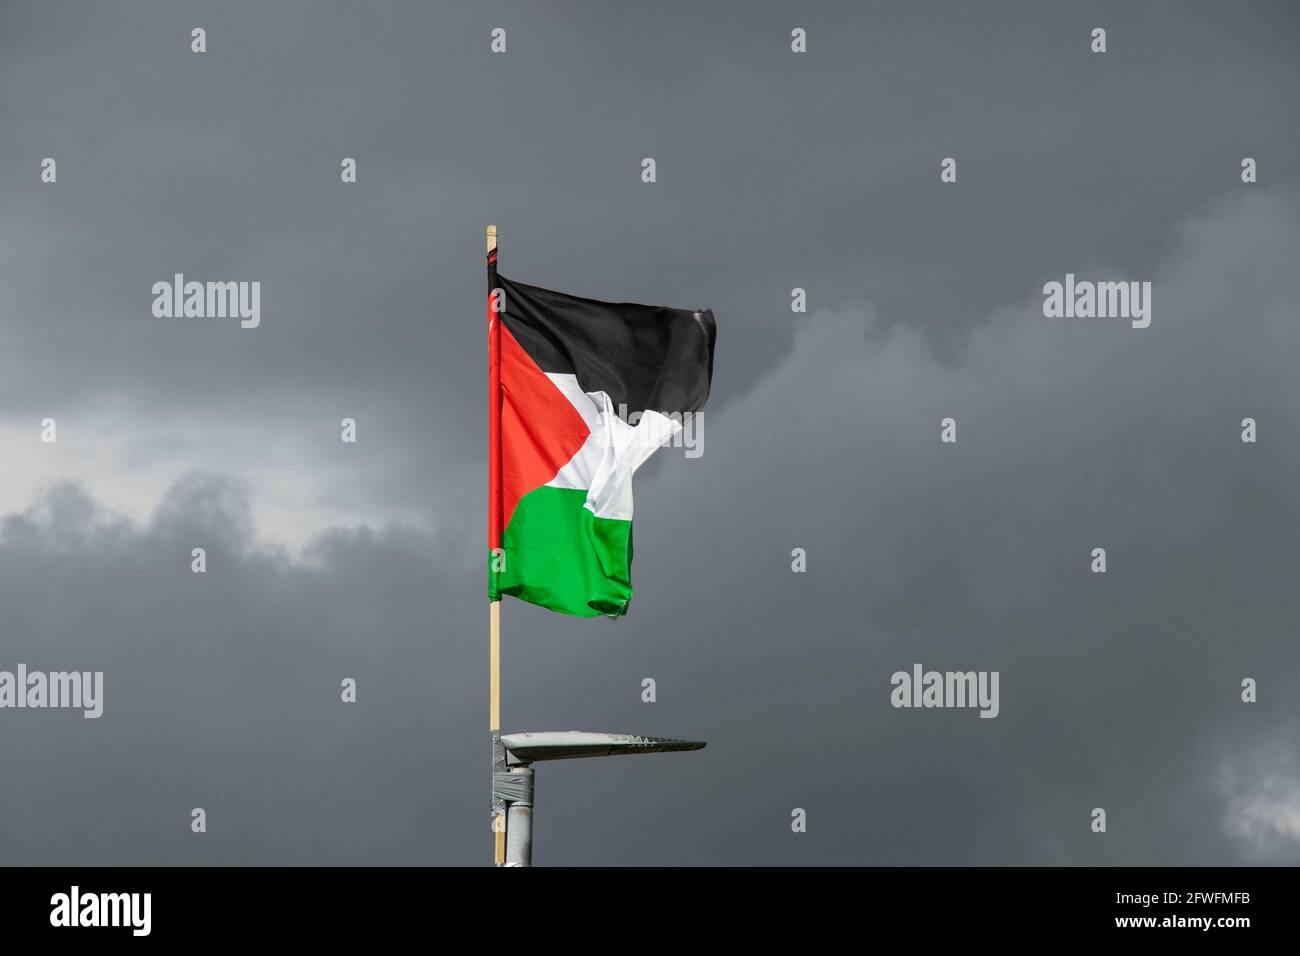 La bandera palestina Foto de stock